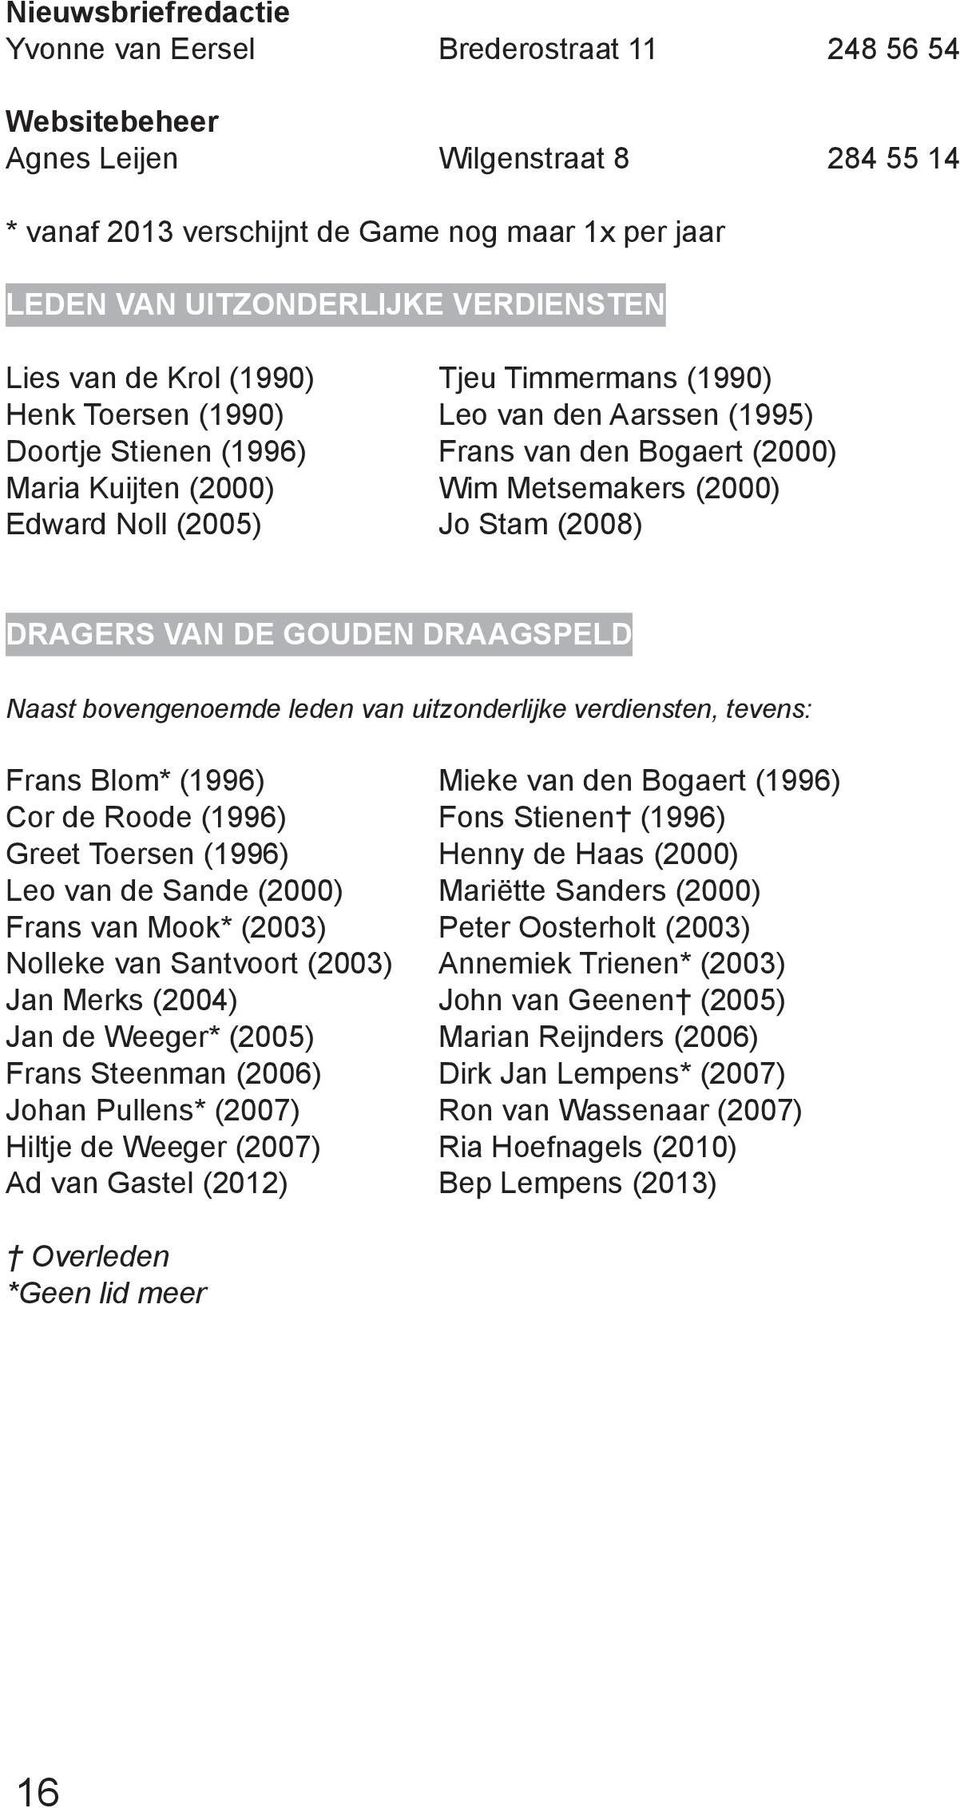 (2000) Edward Noll (2005) Jo Stam (2008) Dragers van de gouden draagspeld Naast bovengenoemde leden van uitzonderlijke verdiensten, tevens: Frans Blom* (1996) Mieke van den Bogaert (1996) Cor de